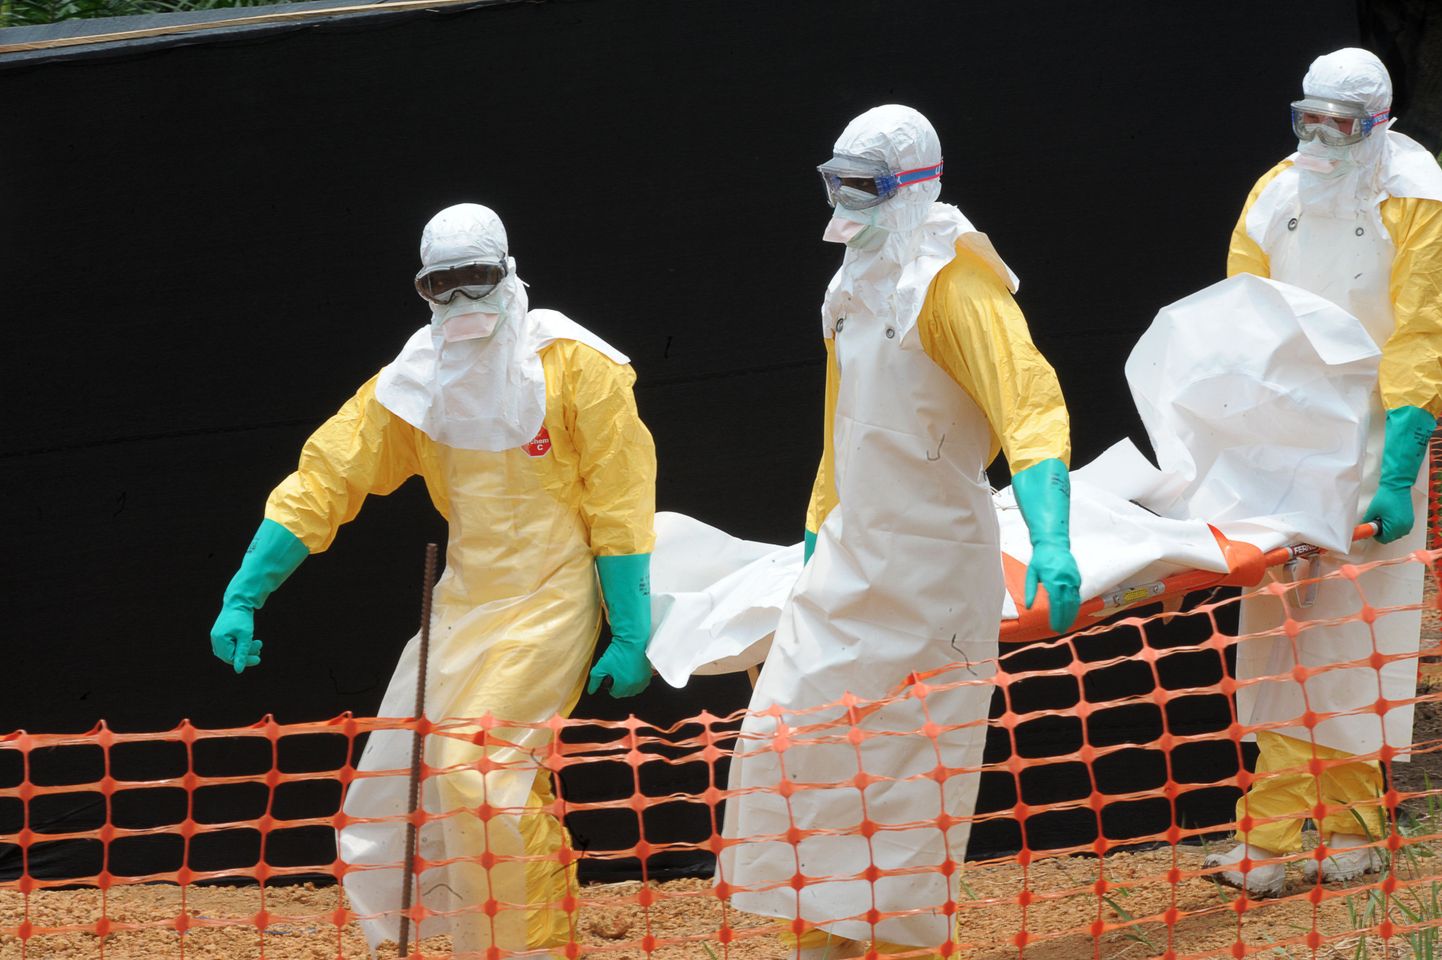 Ebolaviiruse võimalike ohvritega kokku puutuvad arstid kannavad ohutuse tagamiseks erivarustust.